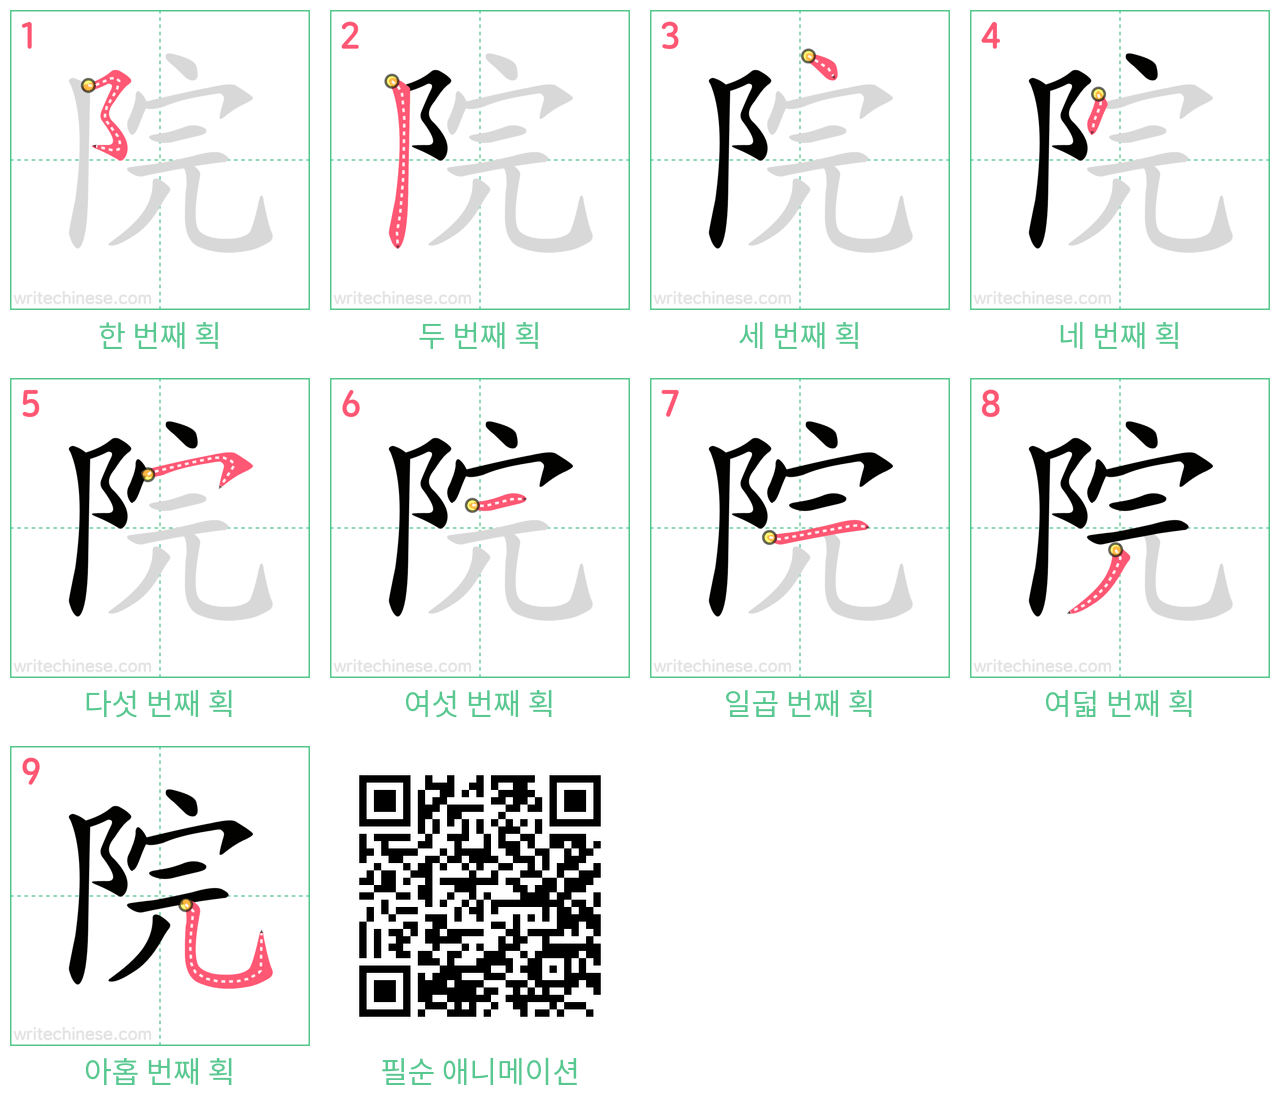 院 step-by-step stroke order diagrams